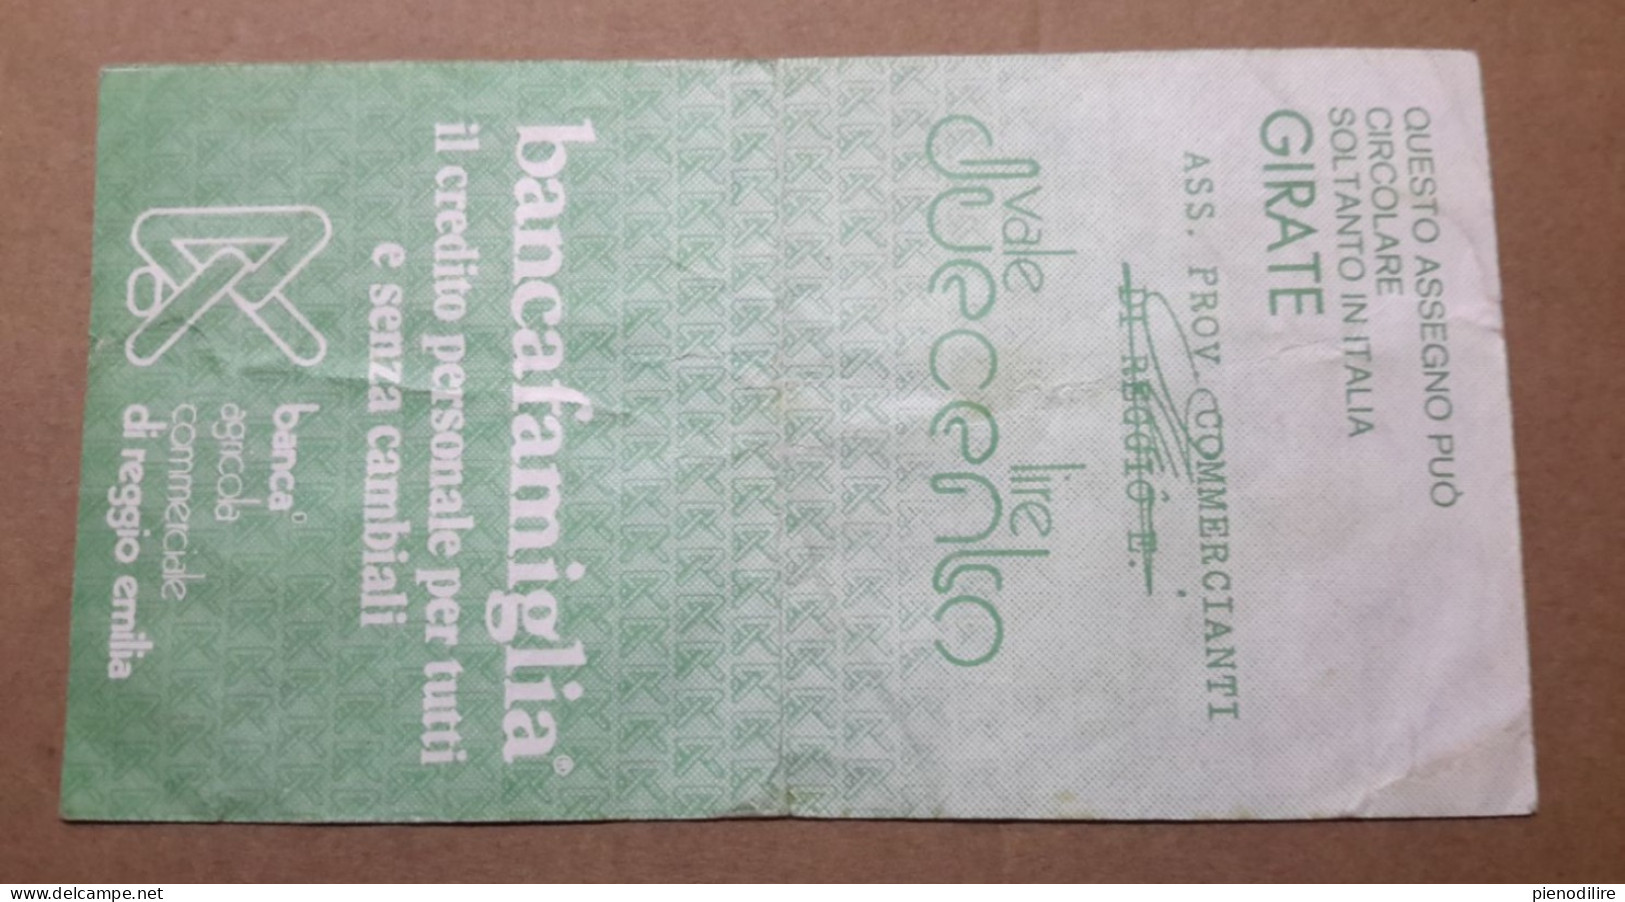 BANCA AGRICOLA COMMERCIALE DI REGGIO EMILIA, 200 Lire 07.10.1977 Ass. Prov. Commercianti "Circolata" (A1.53) - [10] Cheques En Mini-cheques